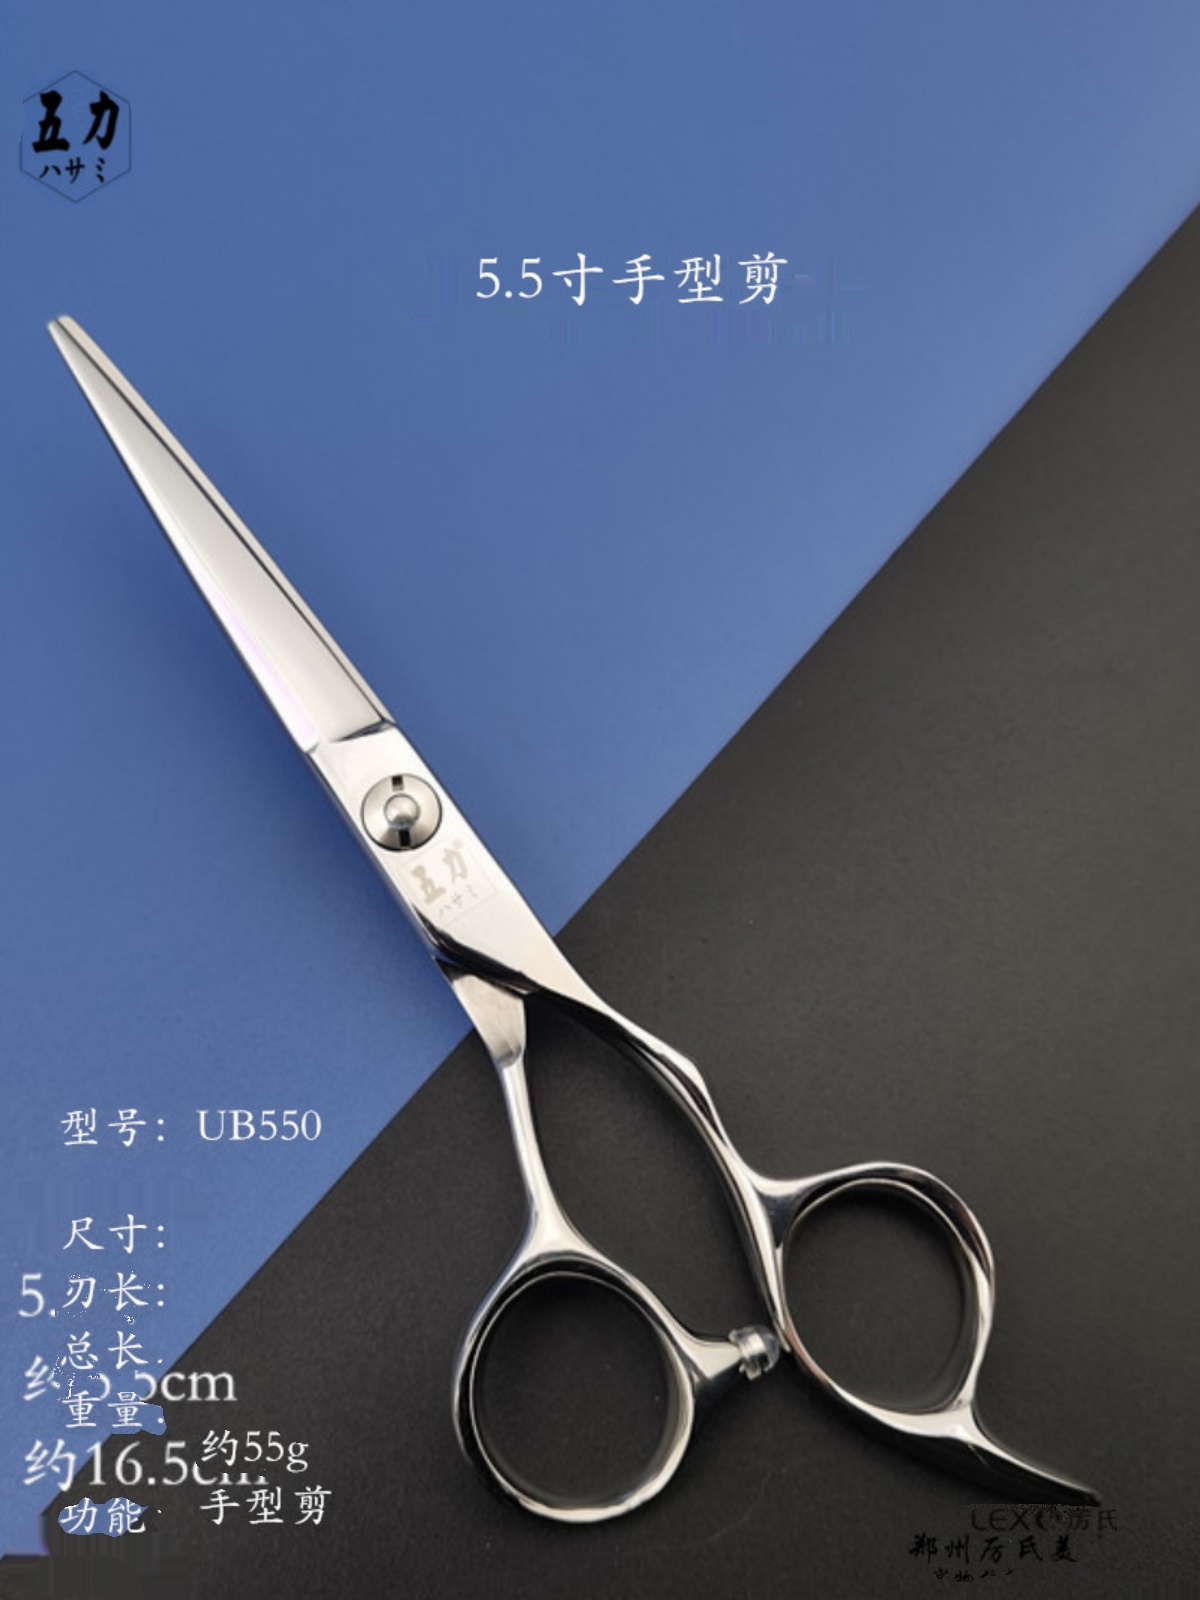 新品郑州厉氏五力美发家用发廊用理发剪刀高品质剪发初级UB550UB6